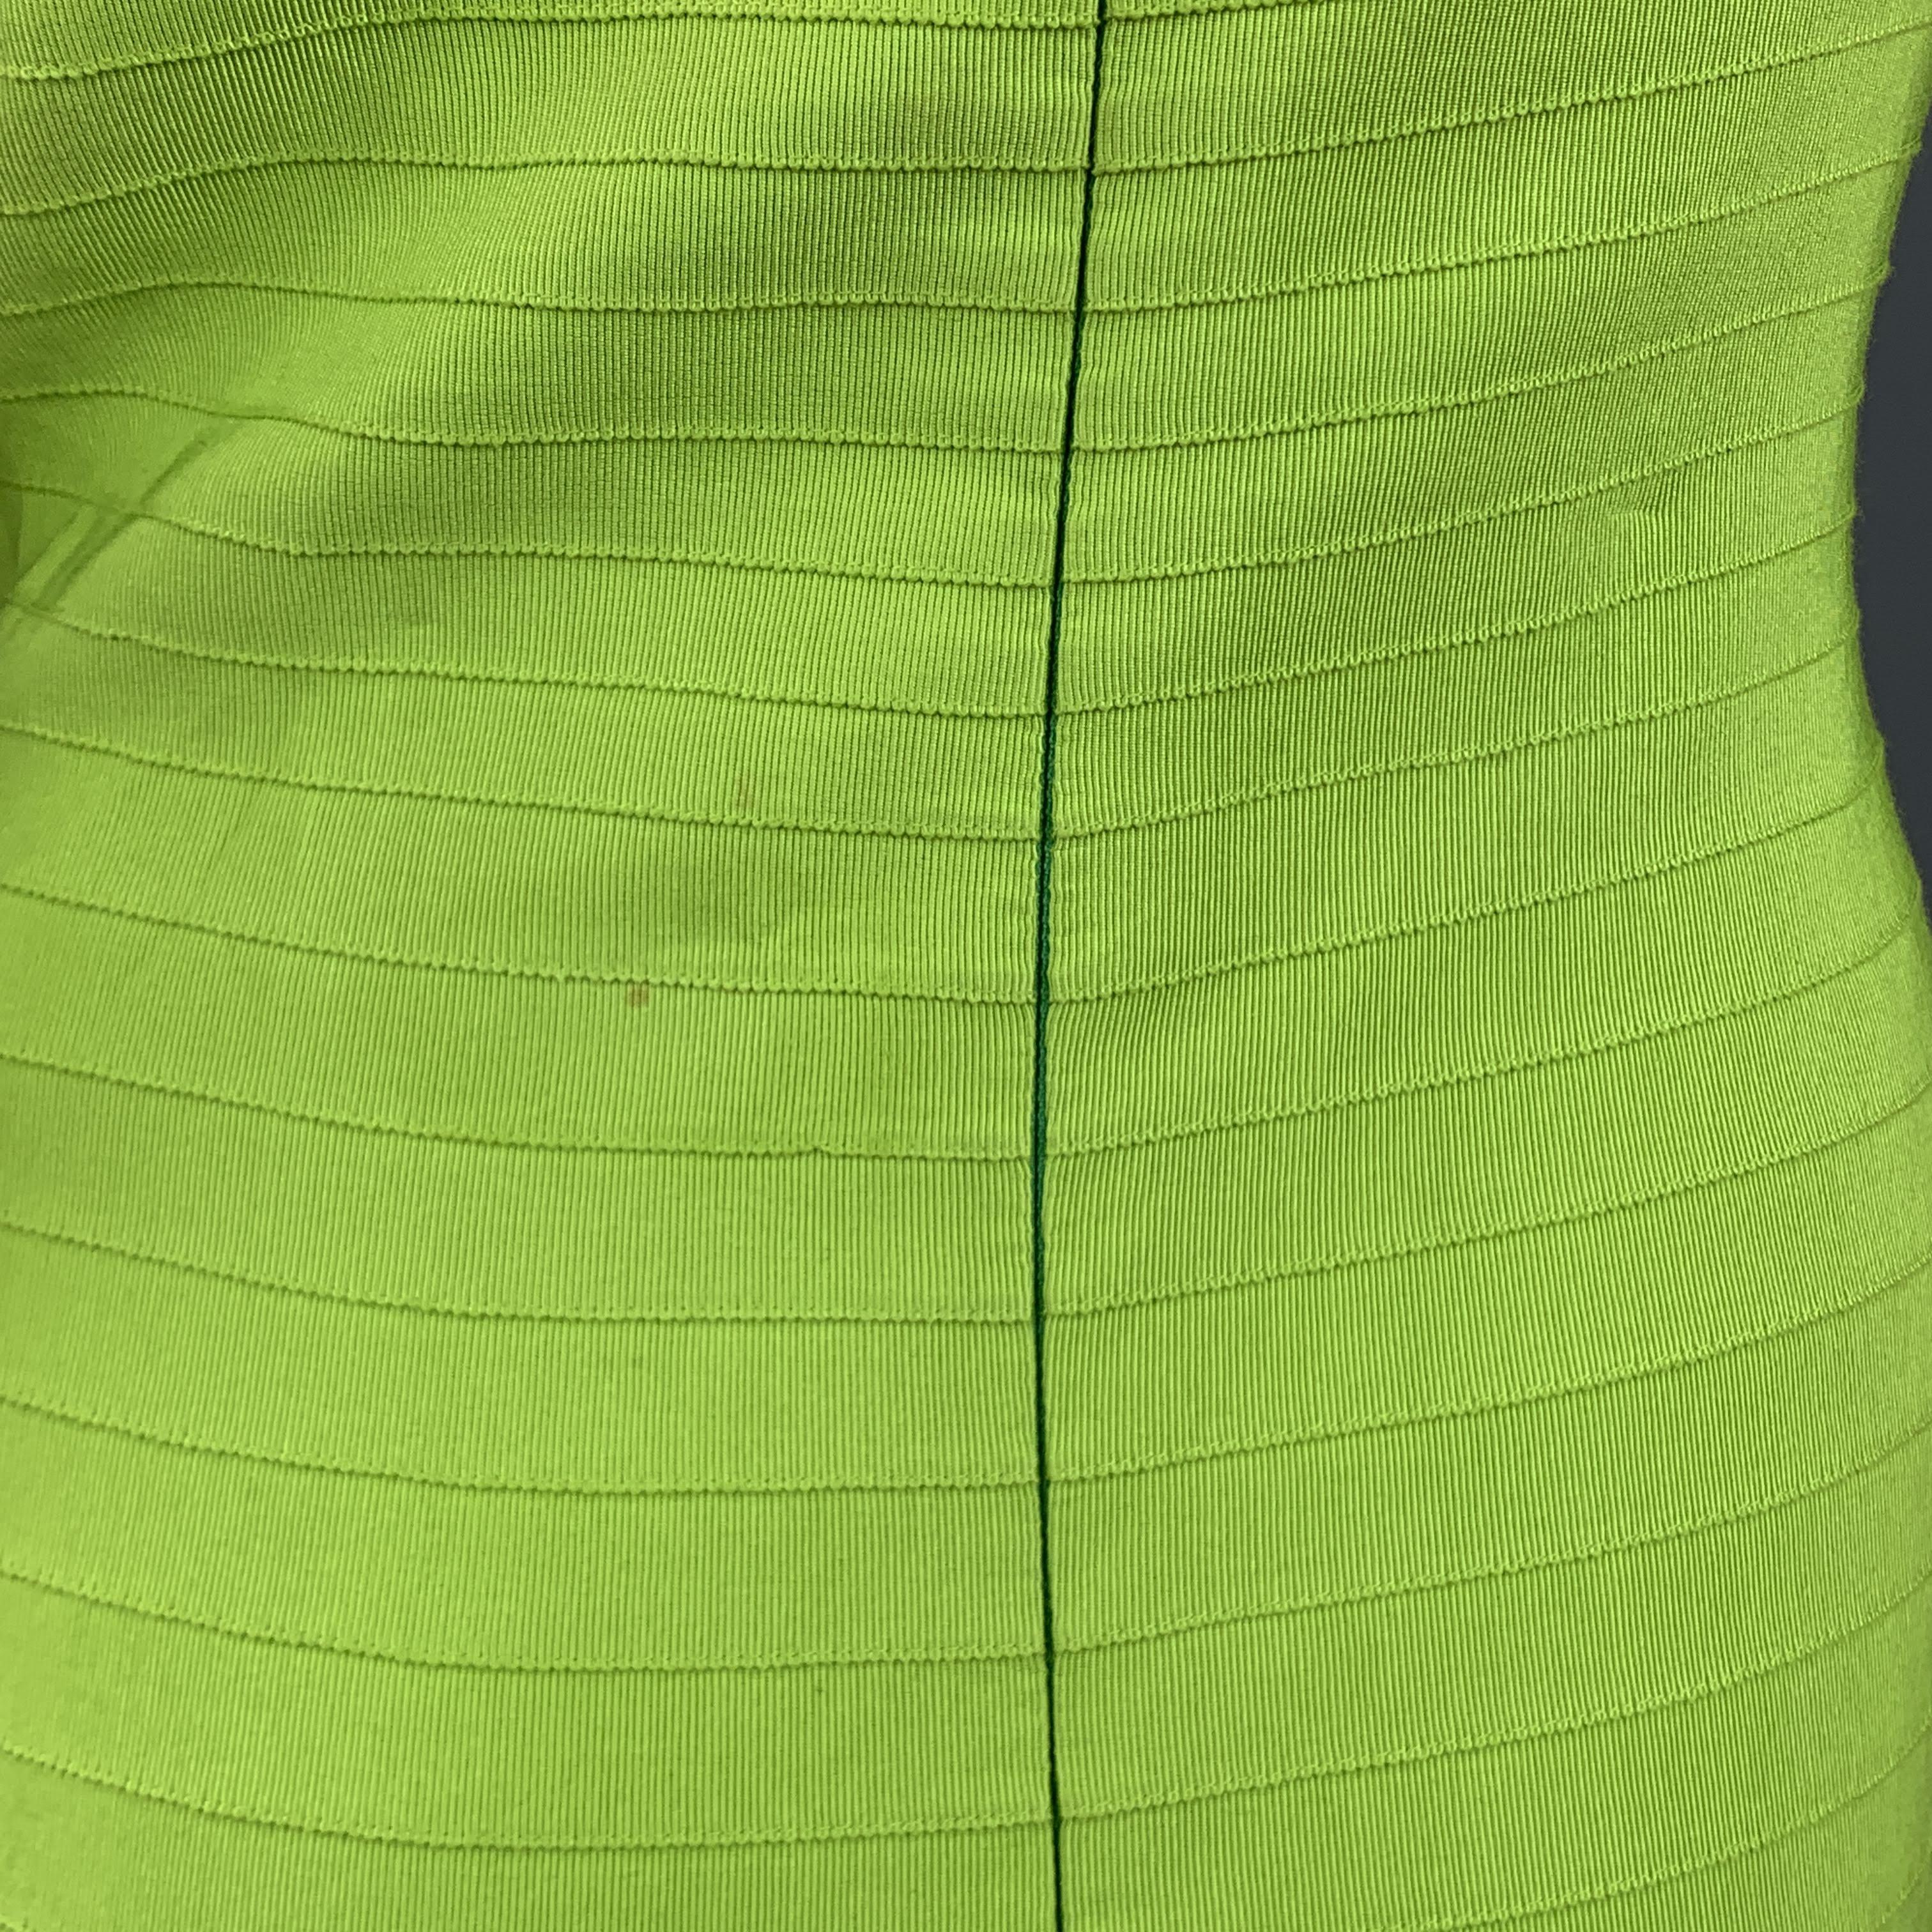 OSCAR DE LA RENTA Size 8 Green Turquoise & Pink Grosgrain Striped Gown 2